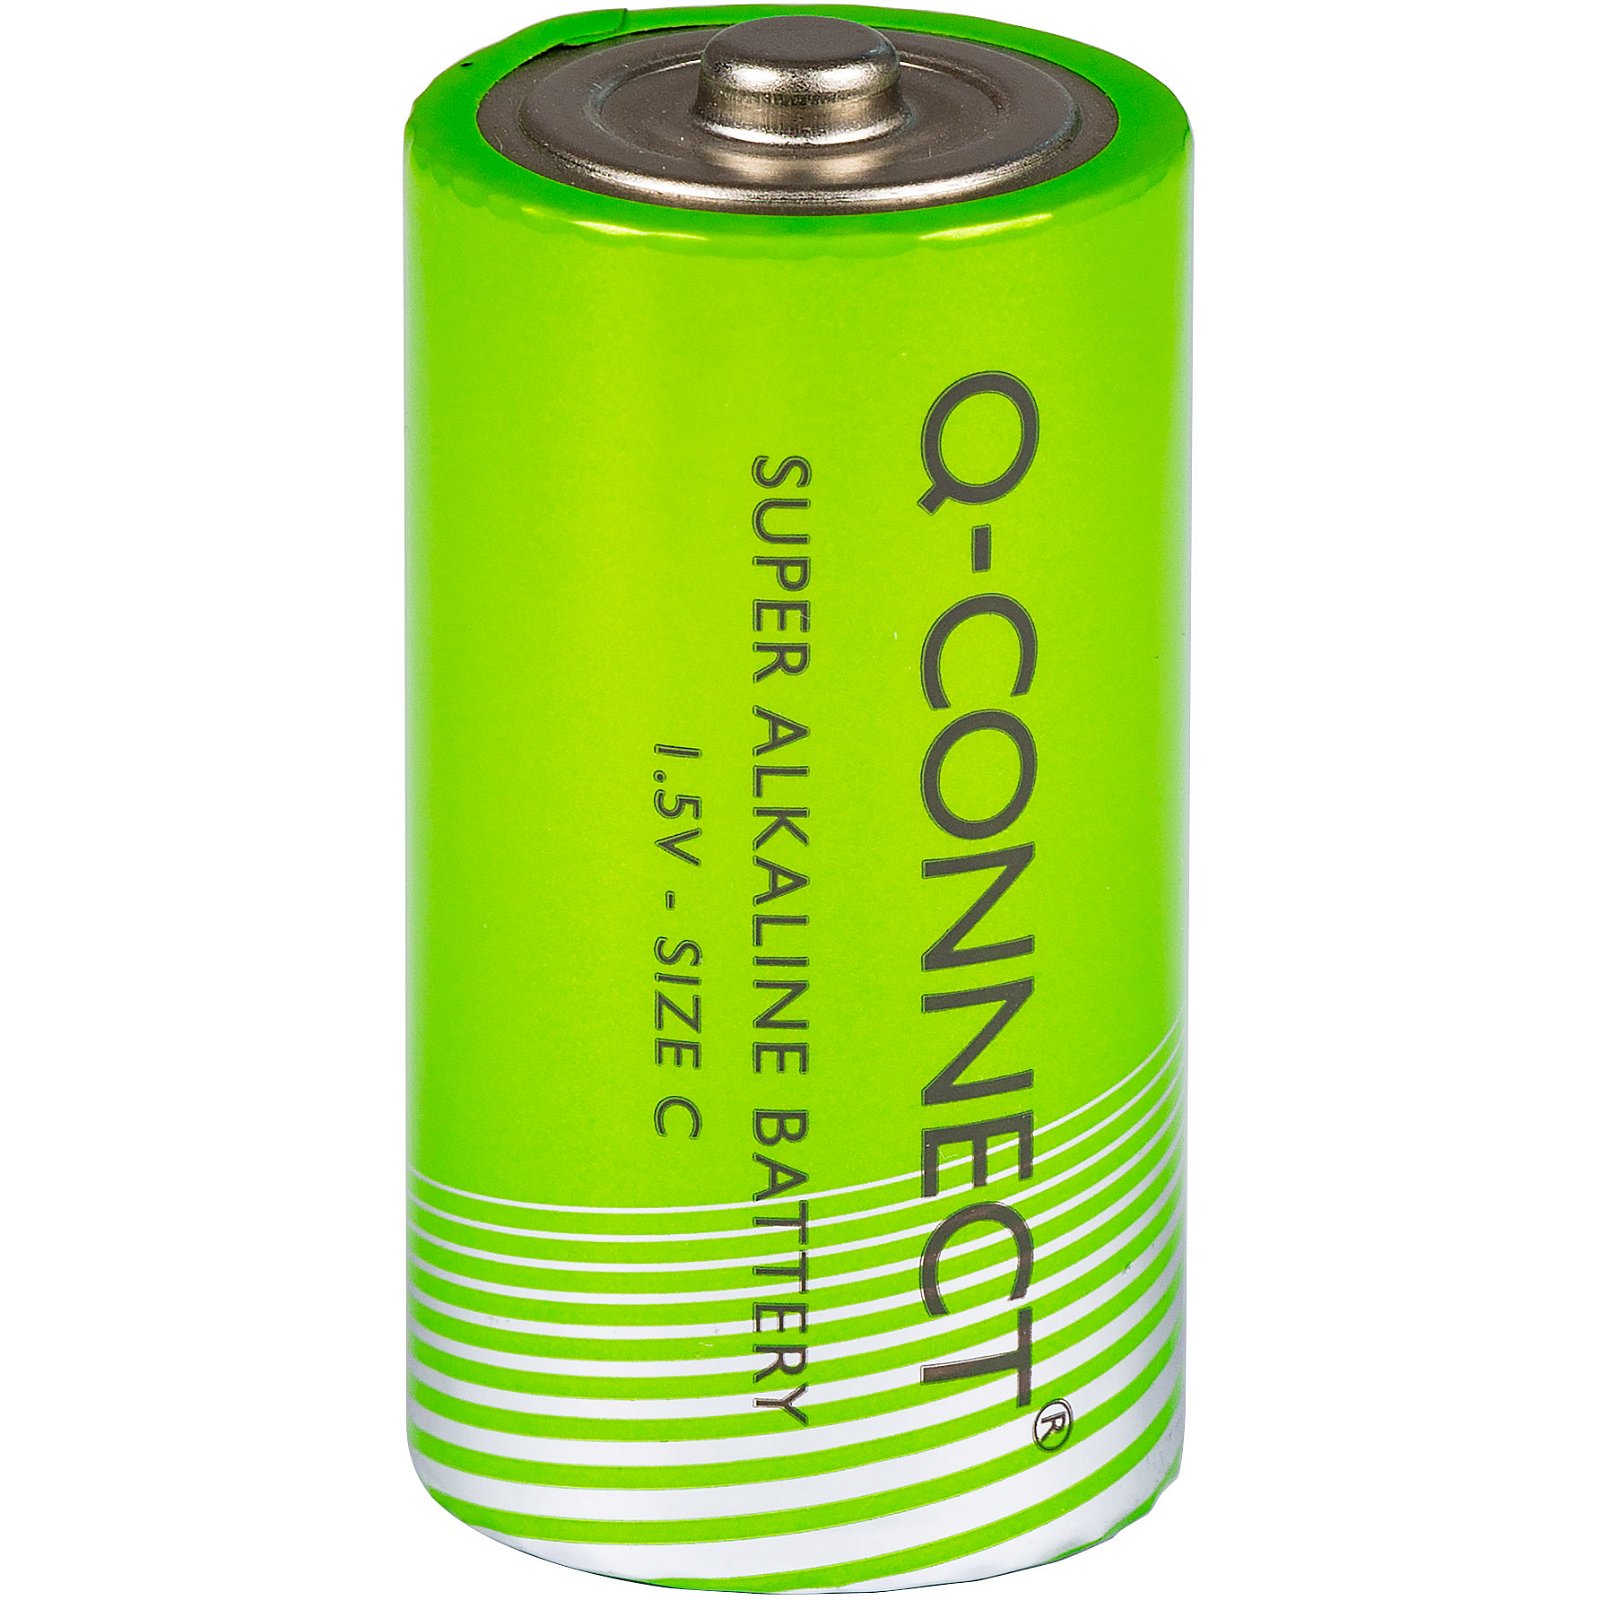 Q-connect C batteri C 1.5 v 2 stk